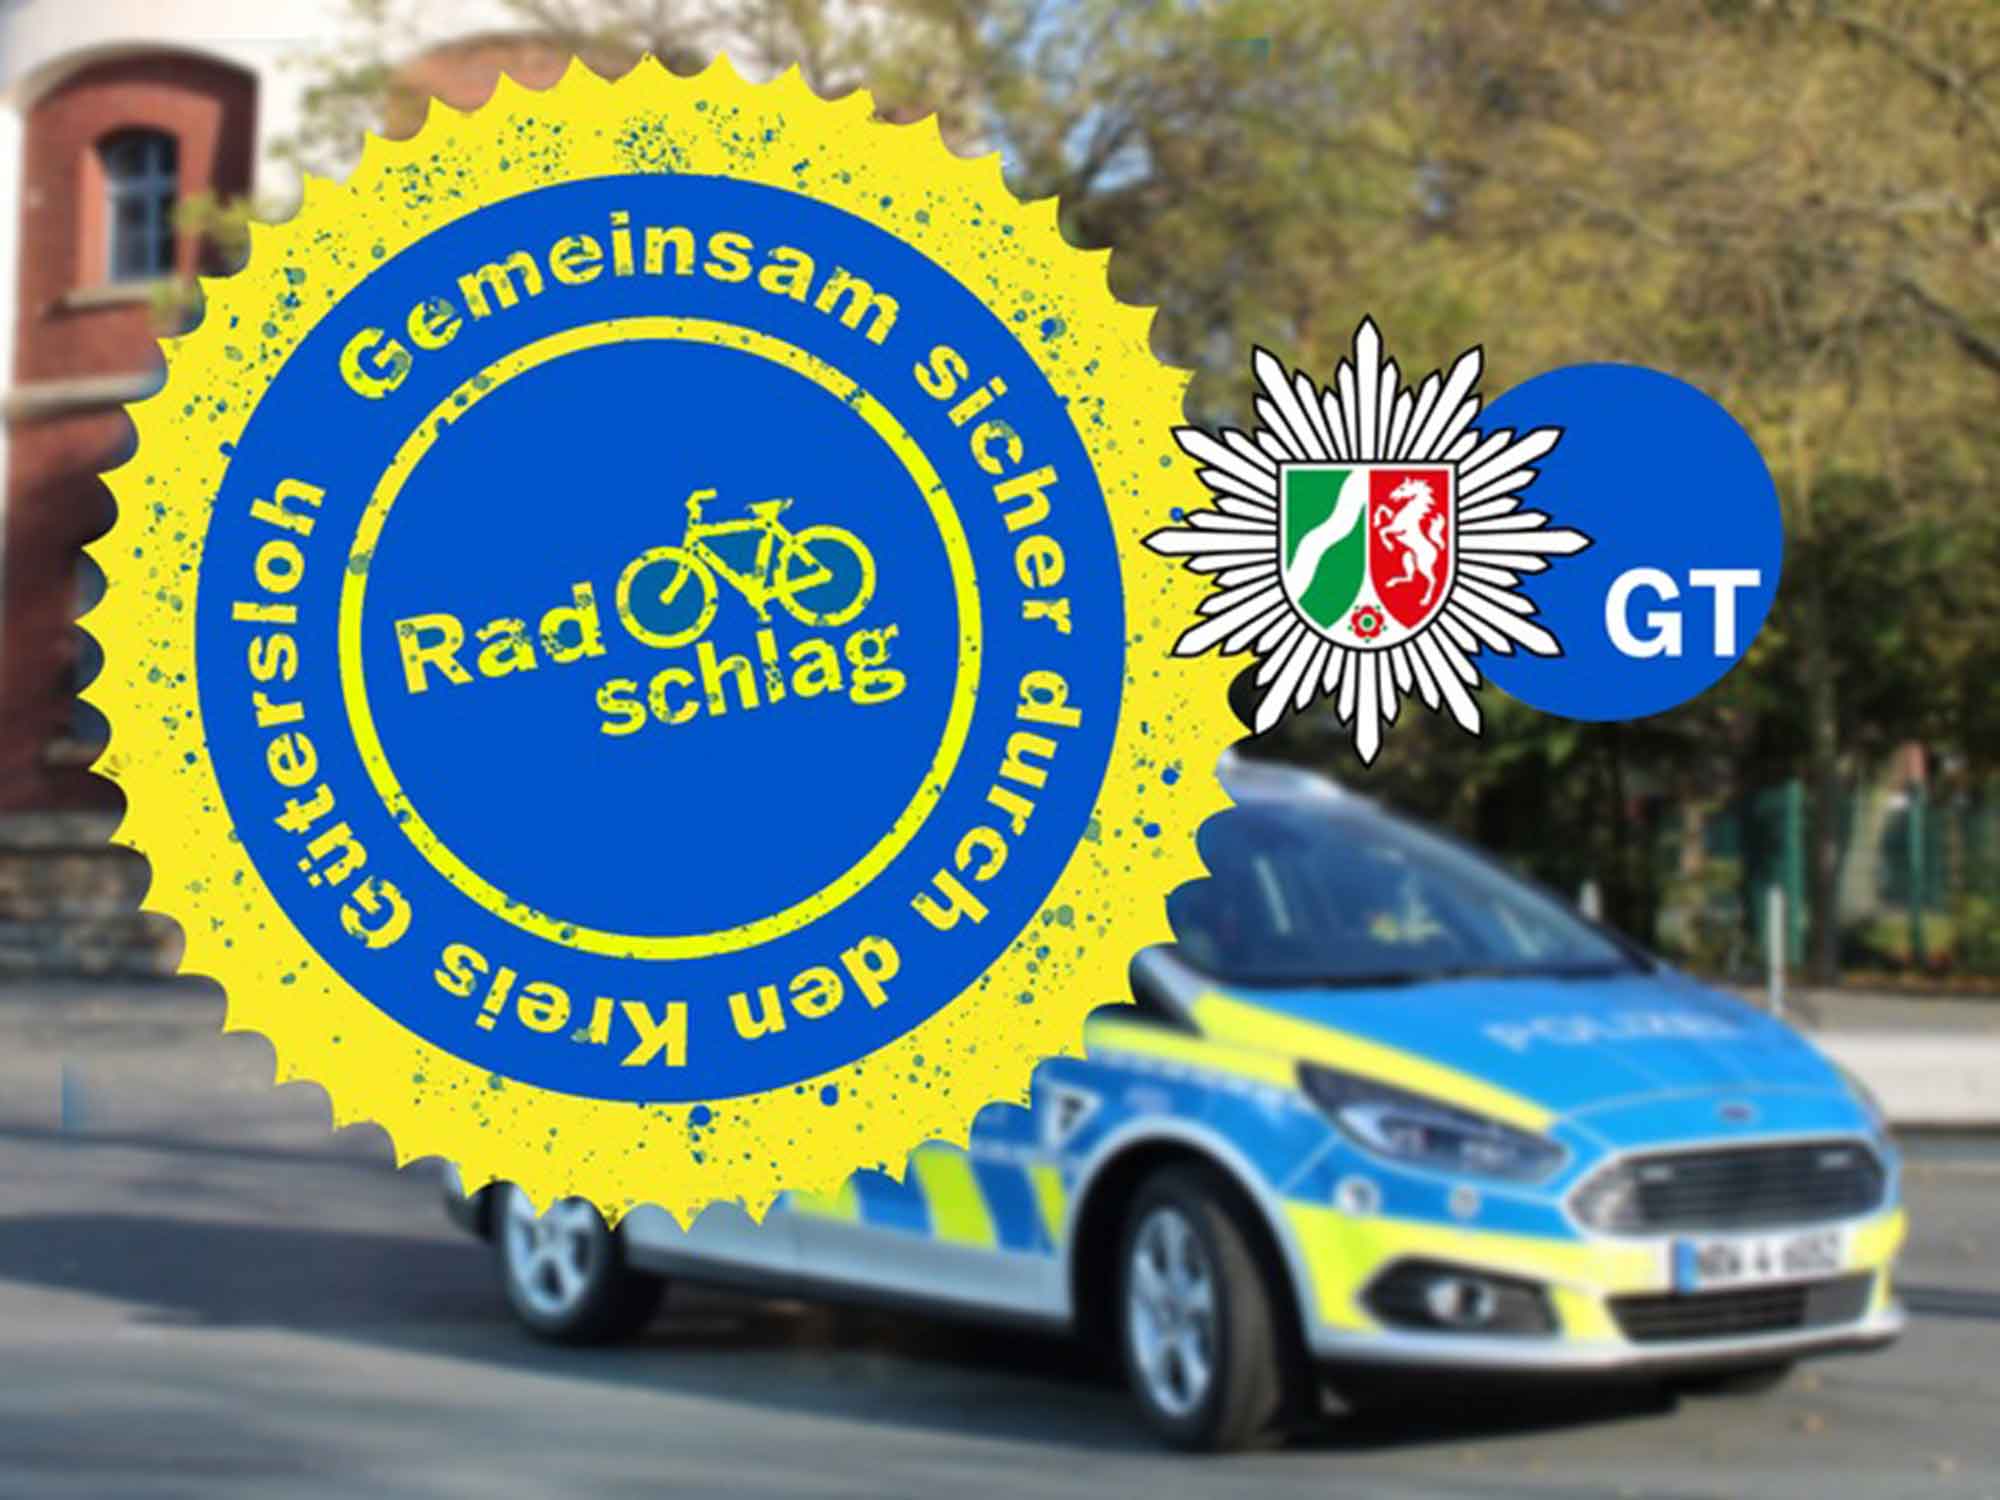 Polizei Gütersloh: Radschlagkontrollen in Rheda Wiedenbrück und Rietberg